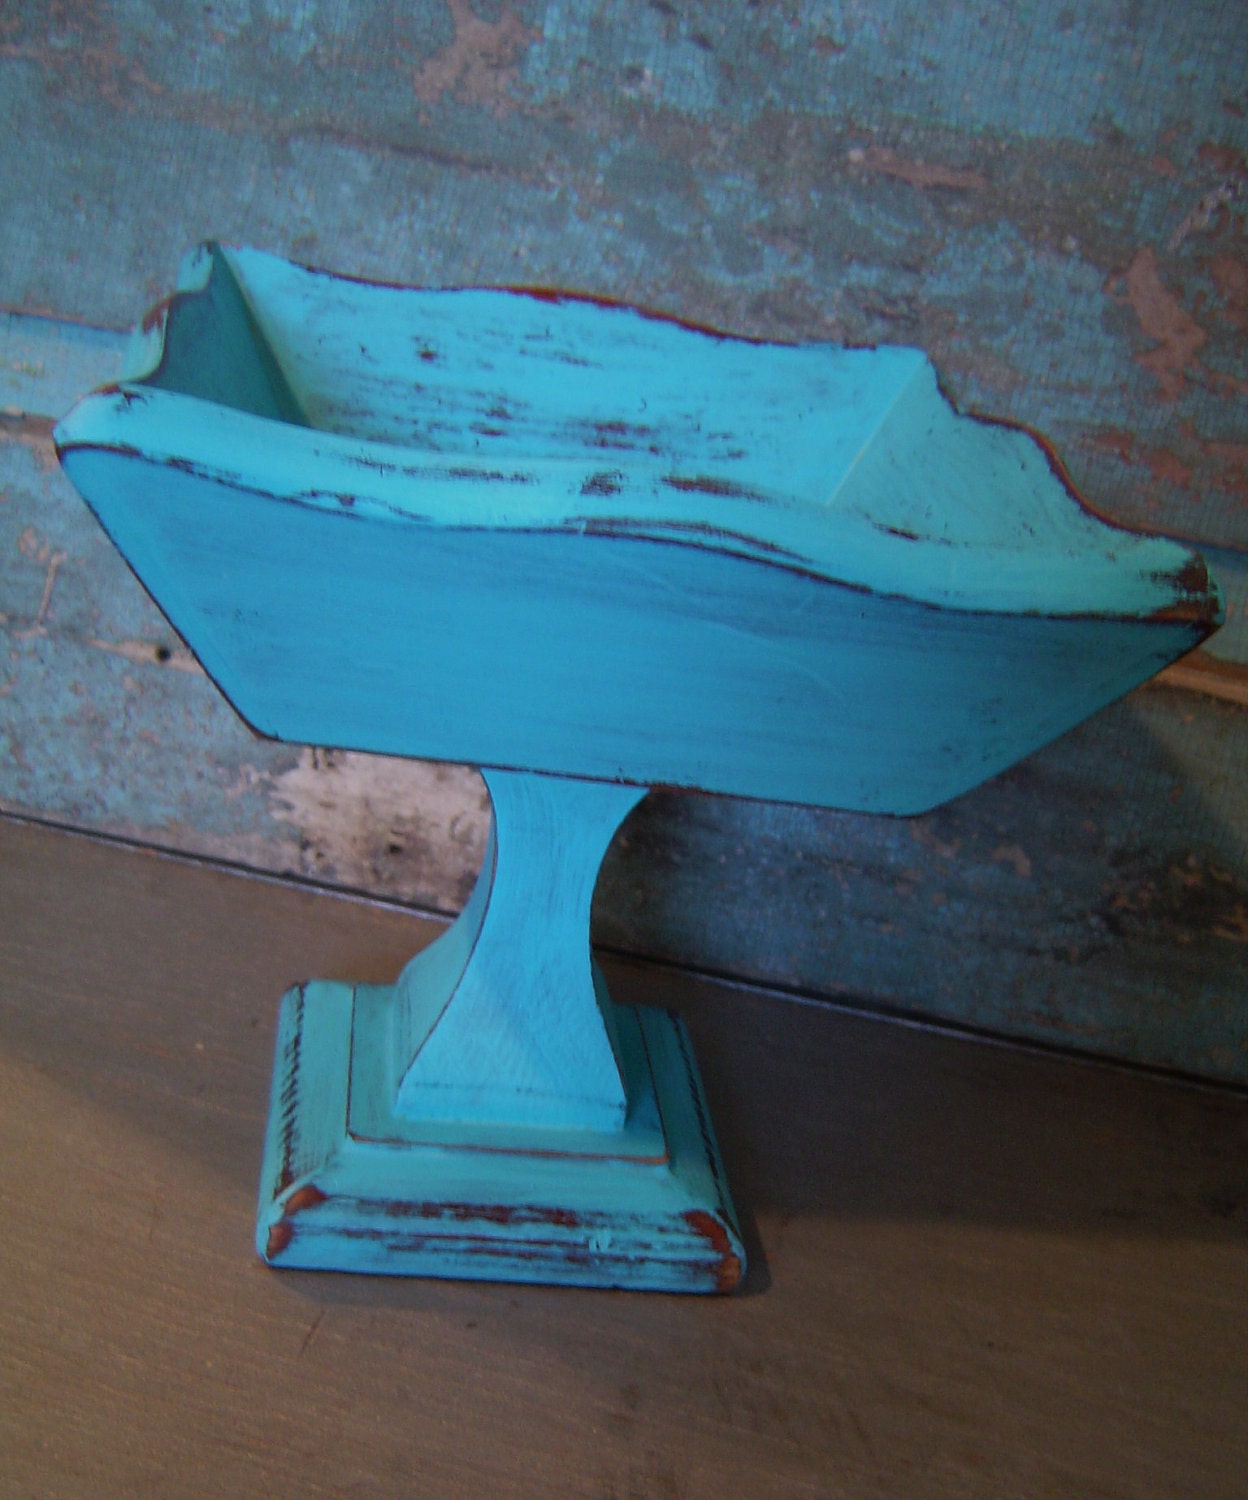 Turquoise Pedestal Display Bowl